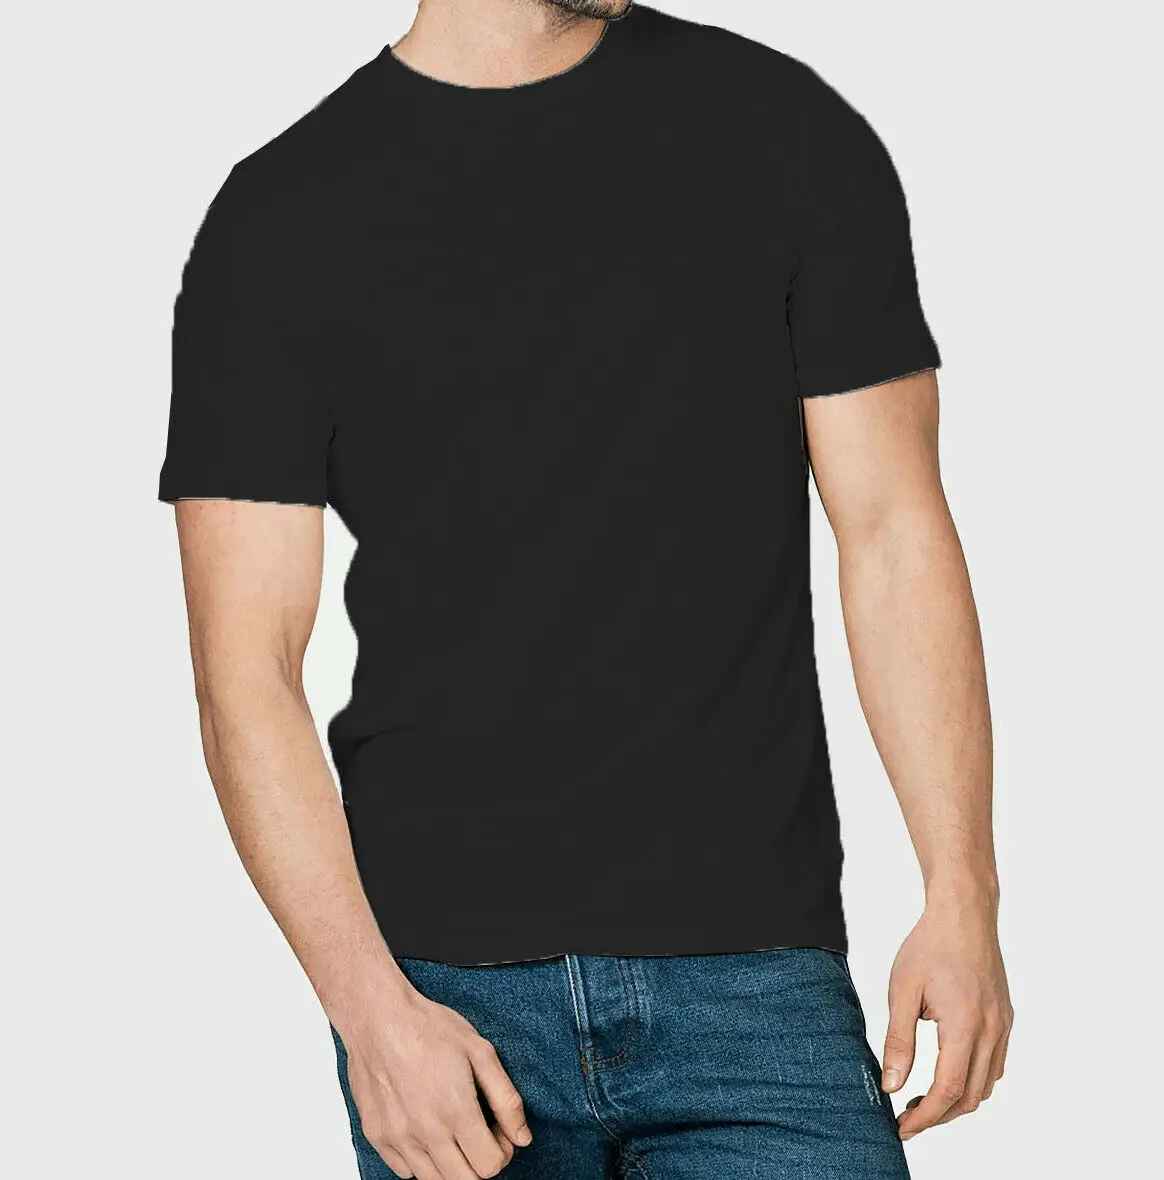 2021 verão T camisas de algodão dos homens 2021 o pescoço estiramento sólidos slim fit tshirts <span class=keywords><strong>simples</strong></span>